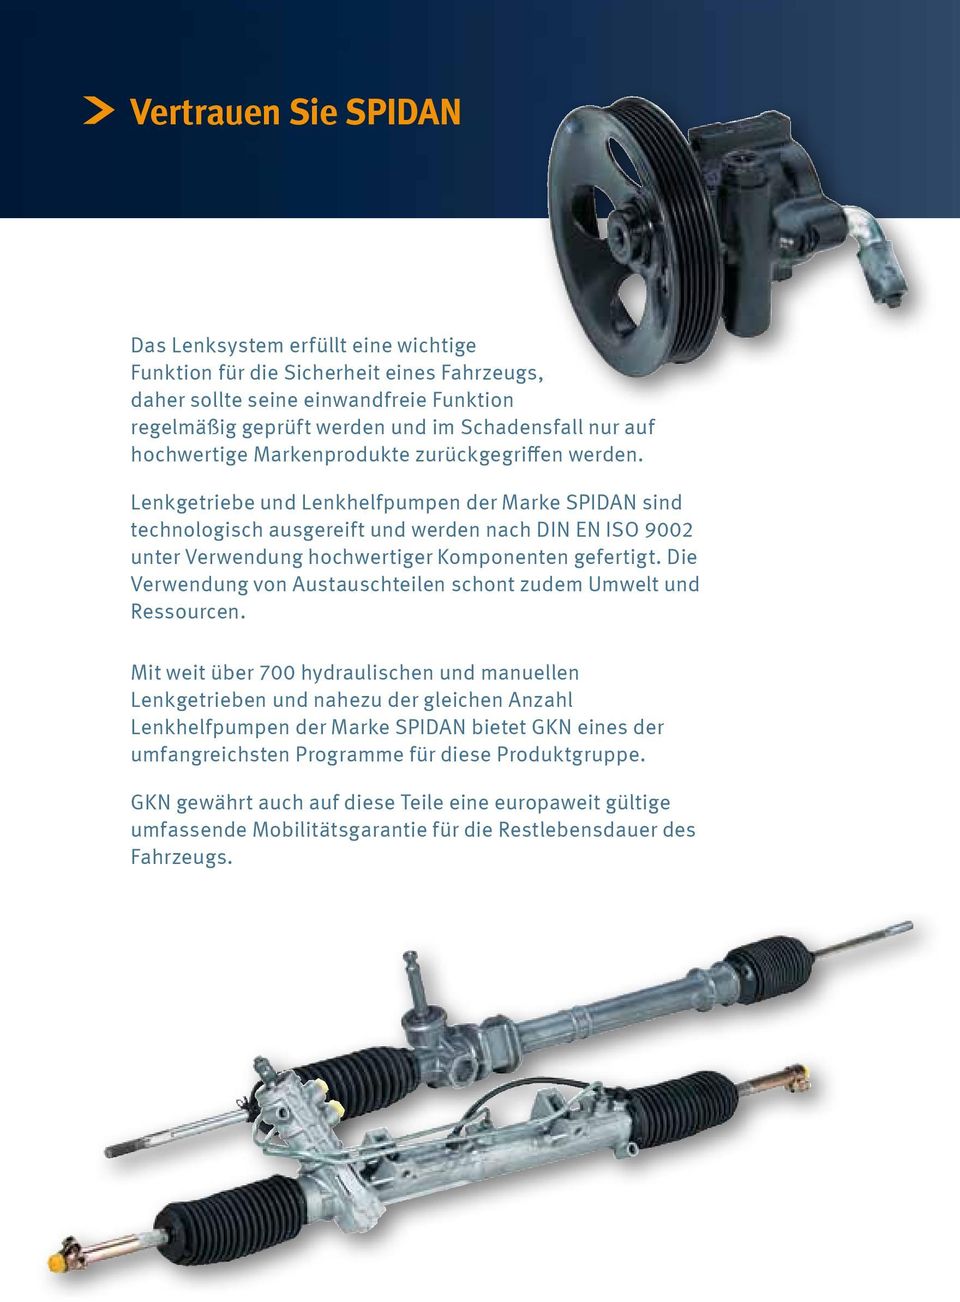 Lenkgetriebe und Lenkhelfpumpen der Marke SPIDAN sind technologisch ausgereift und werden nach DIN EN ISO 9002 unter Verwendung hochwertiger Komponenten gefertigt.